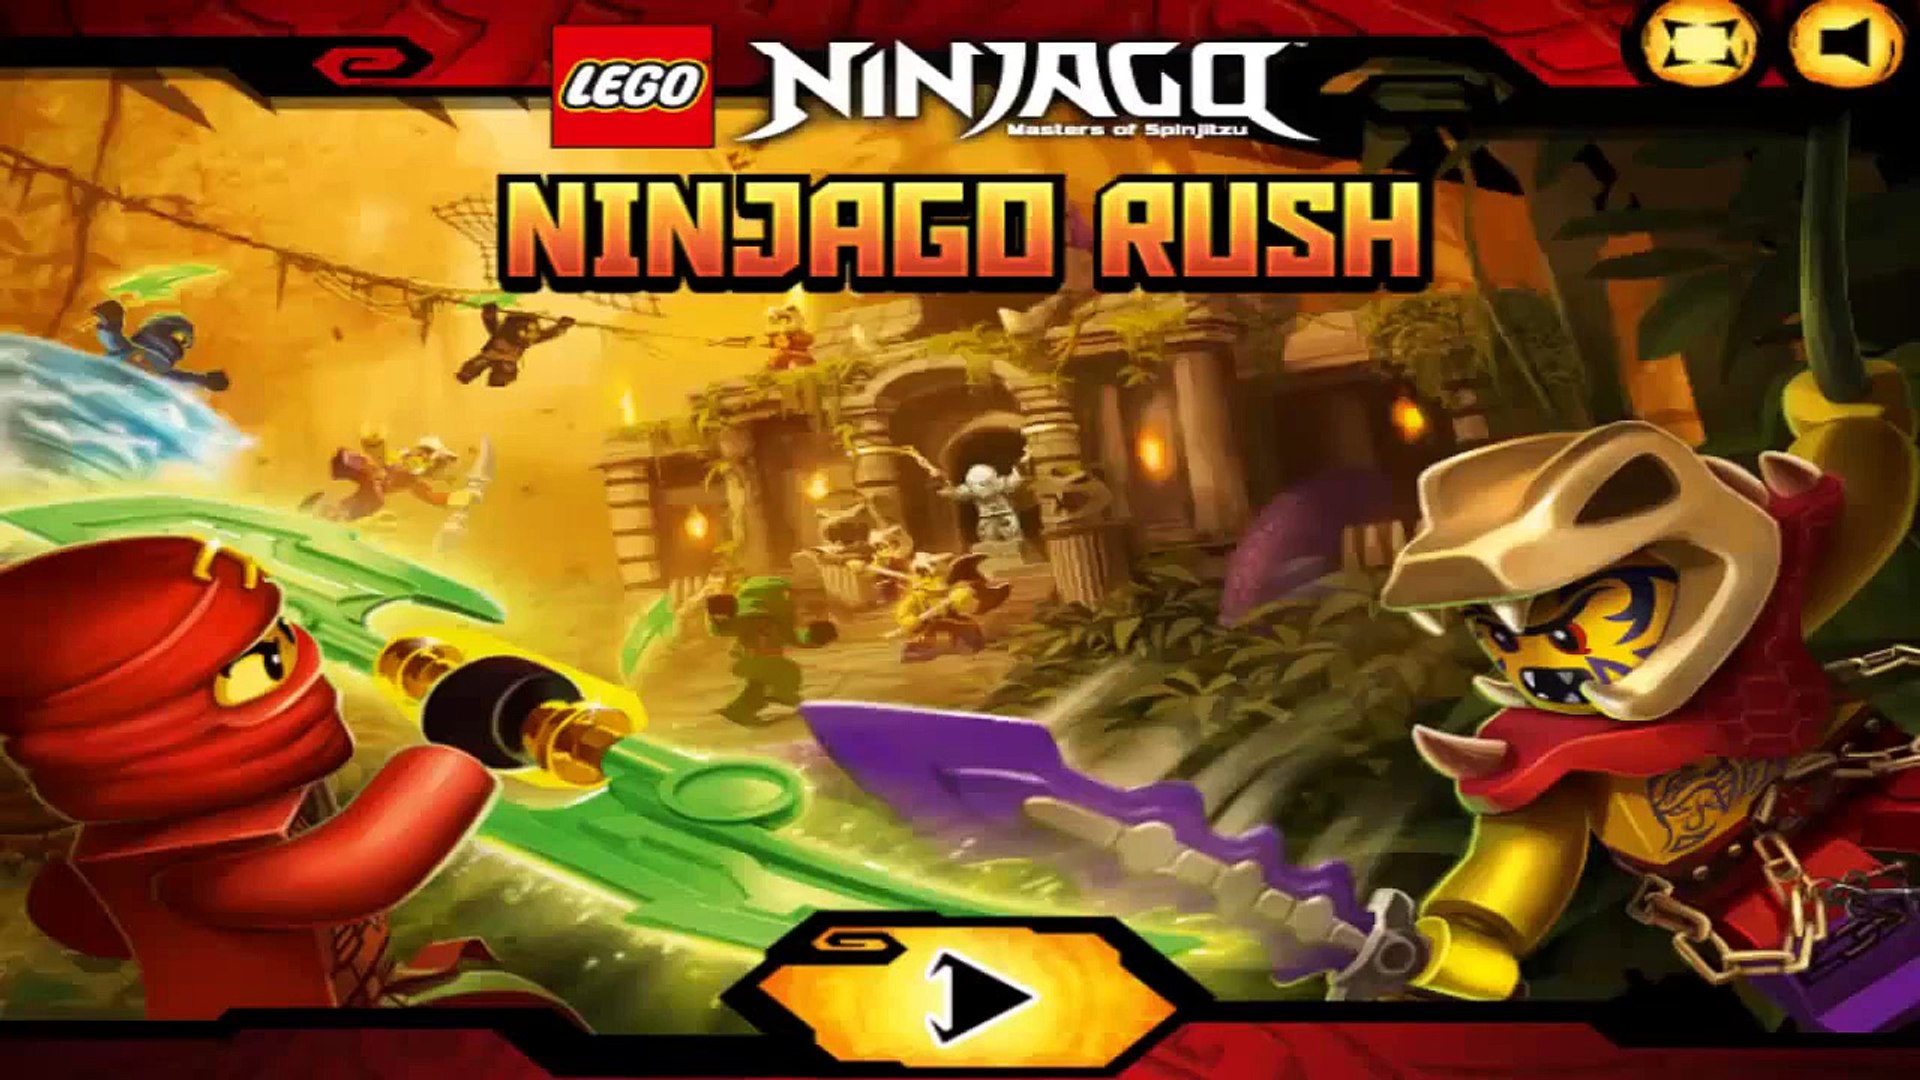 Lego Ninjago: Masters of Spinjitzu - Ninjago Rush Full Game Walkthrough -  video Dailymotion